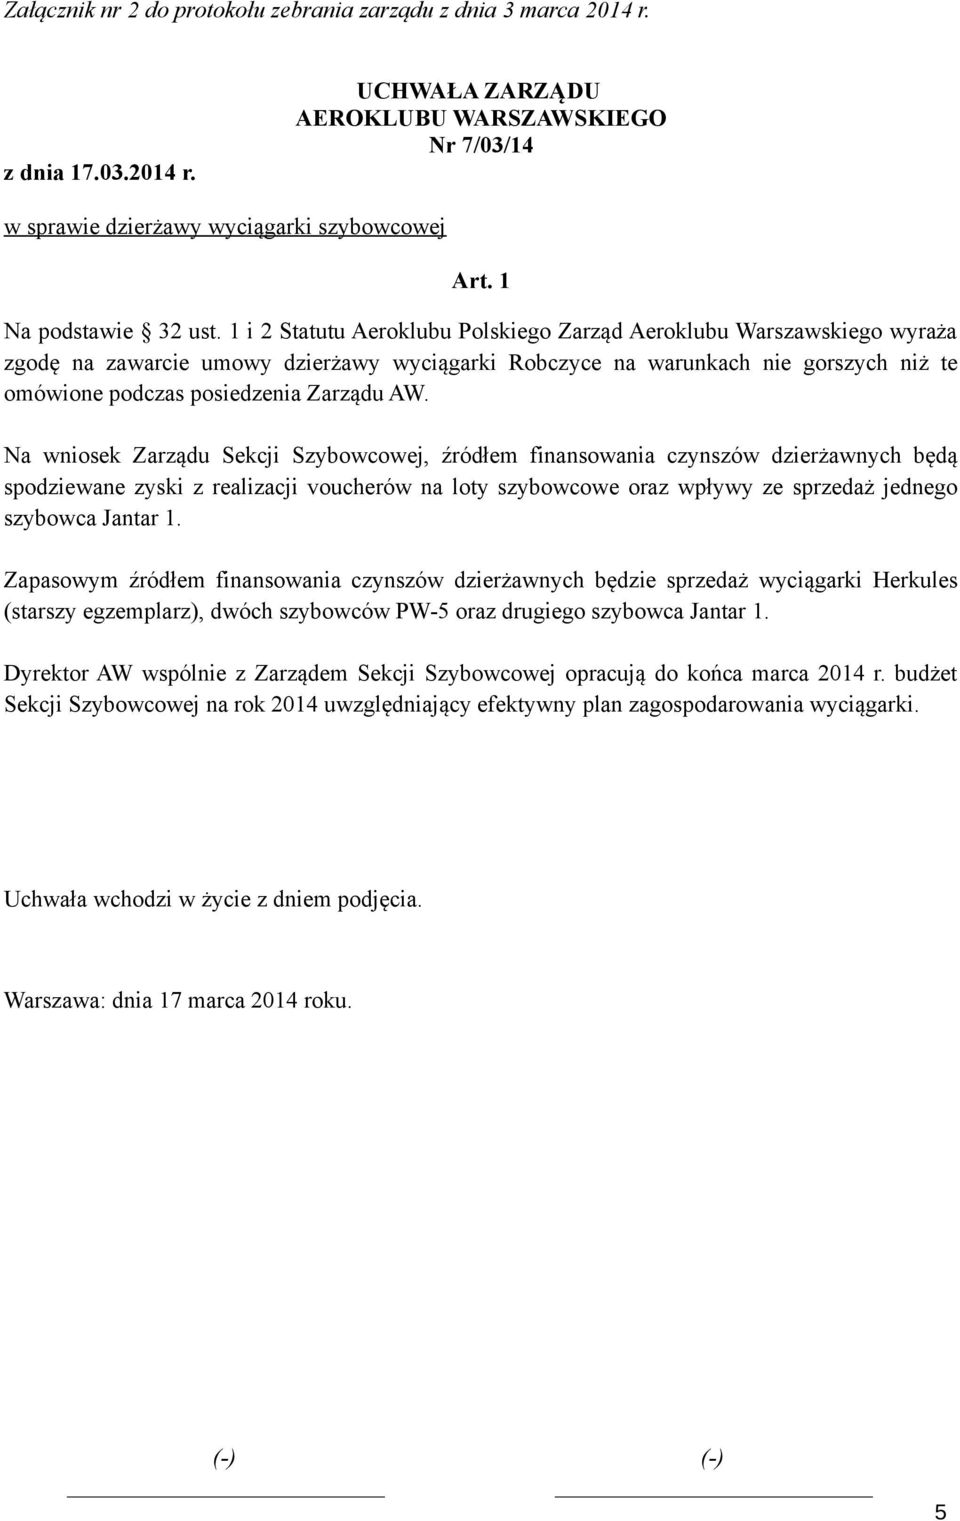 1 i 2 Statutu Aeroklubu Polskiego Zarząd Aeroklubu Warszawskiego wyraża zgodę na zawarcie umowy dzierżawy wyciągarki Robczyce na warunkach nie gorszych niż te omówione podczas posiedzenia Zarządu AW.